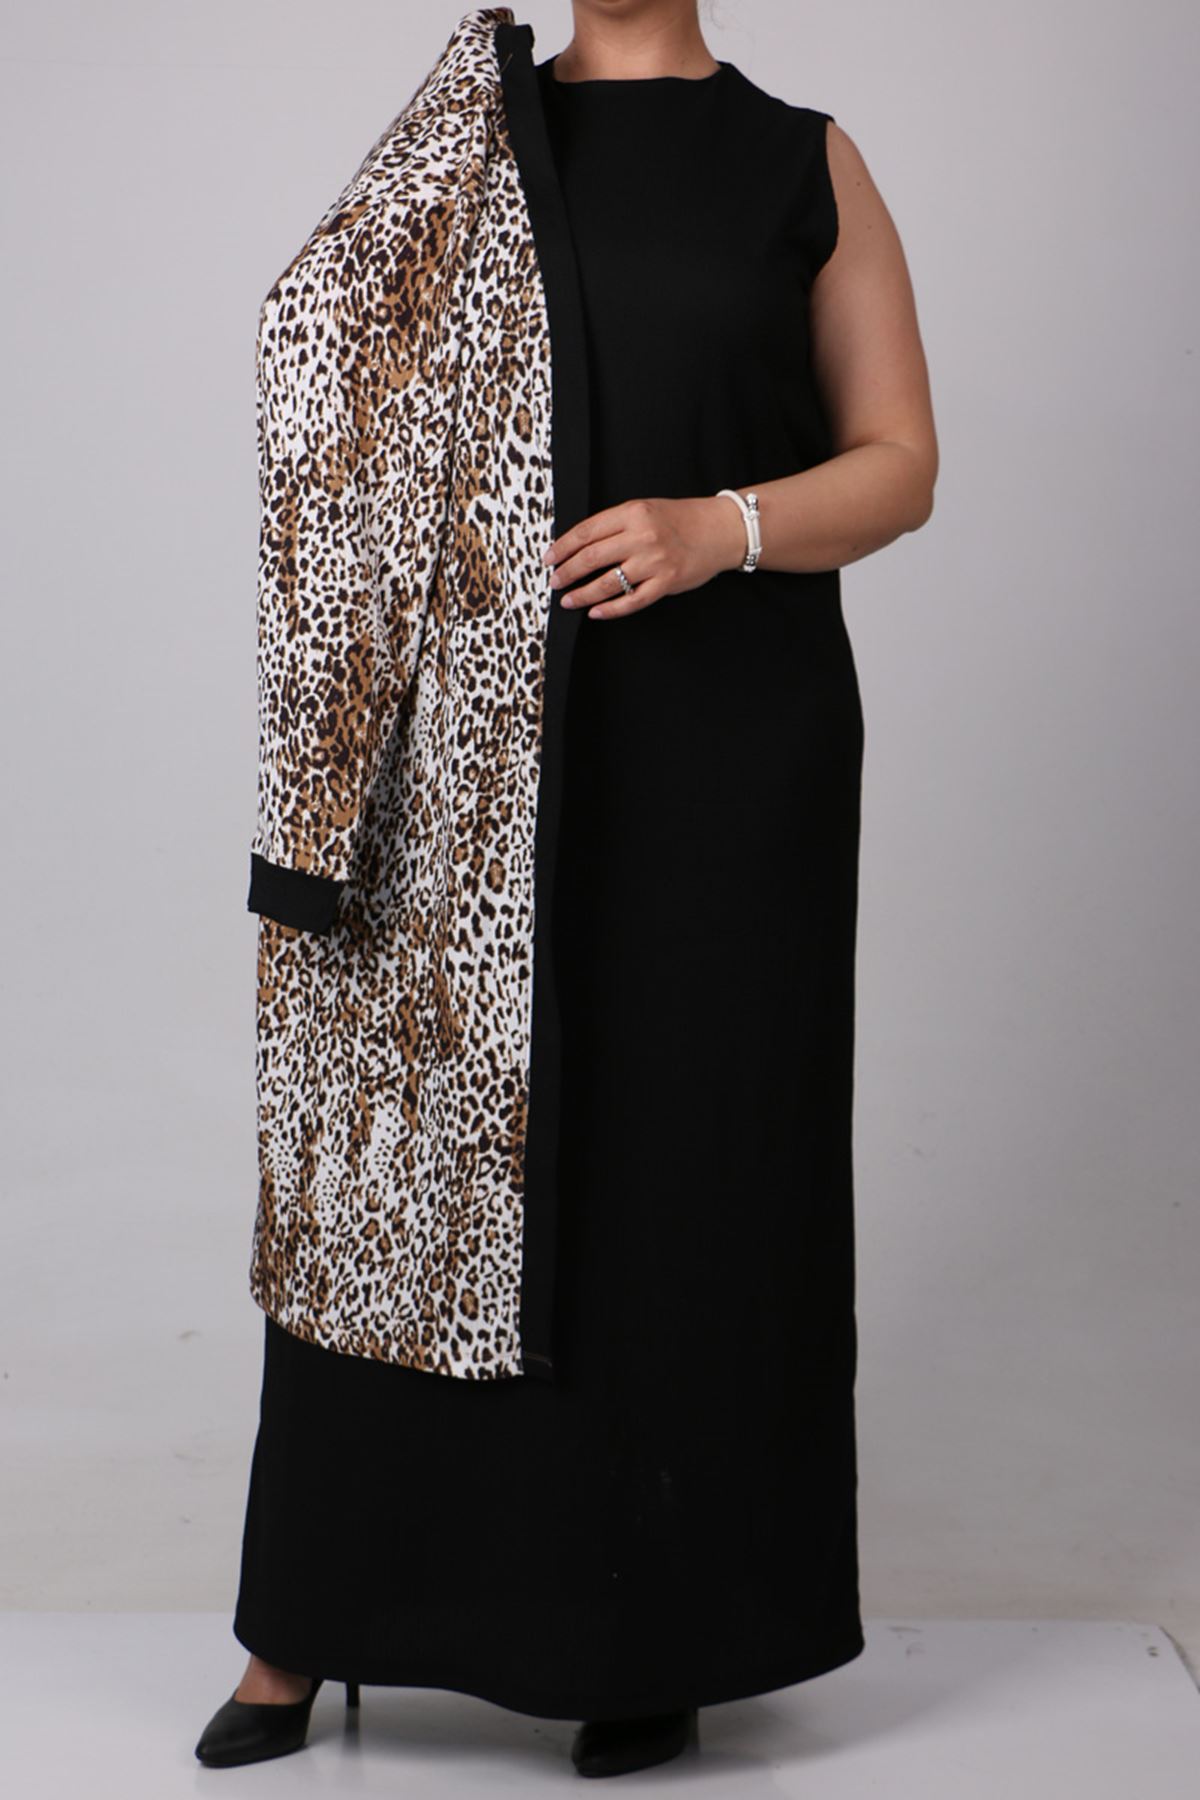 37206 Large Size Crassula Jacket Dress Suit- Leopard